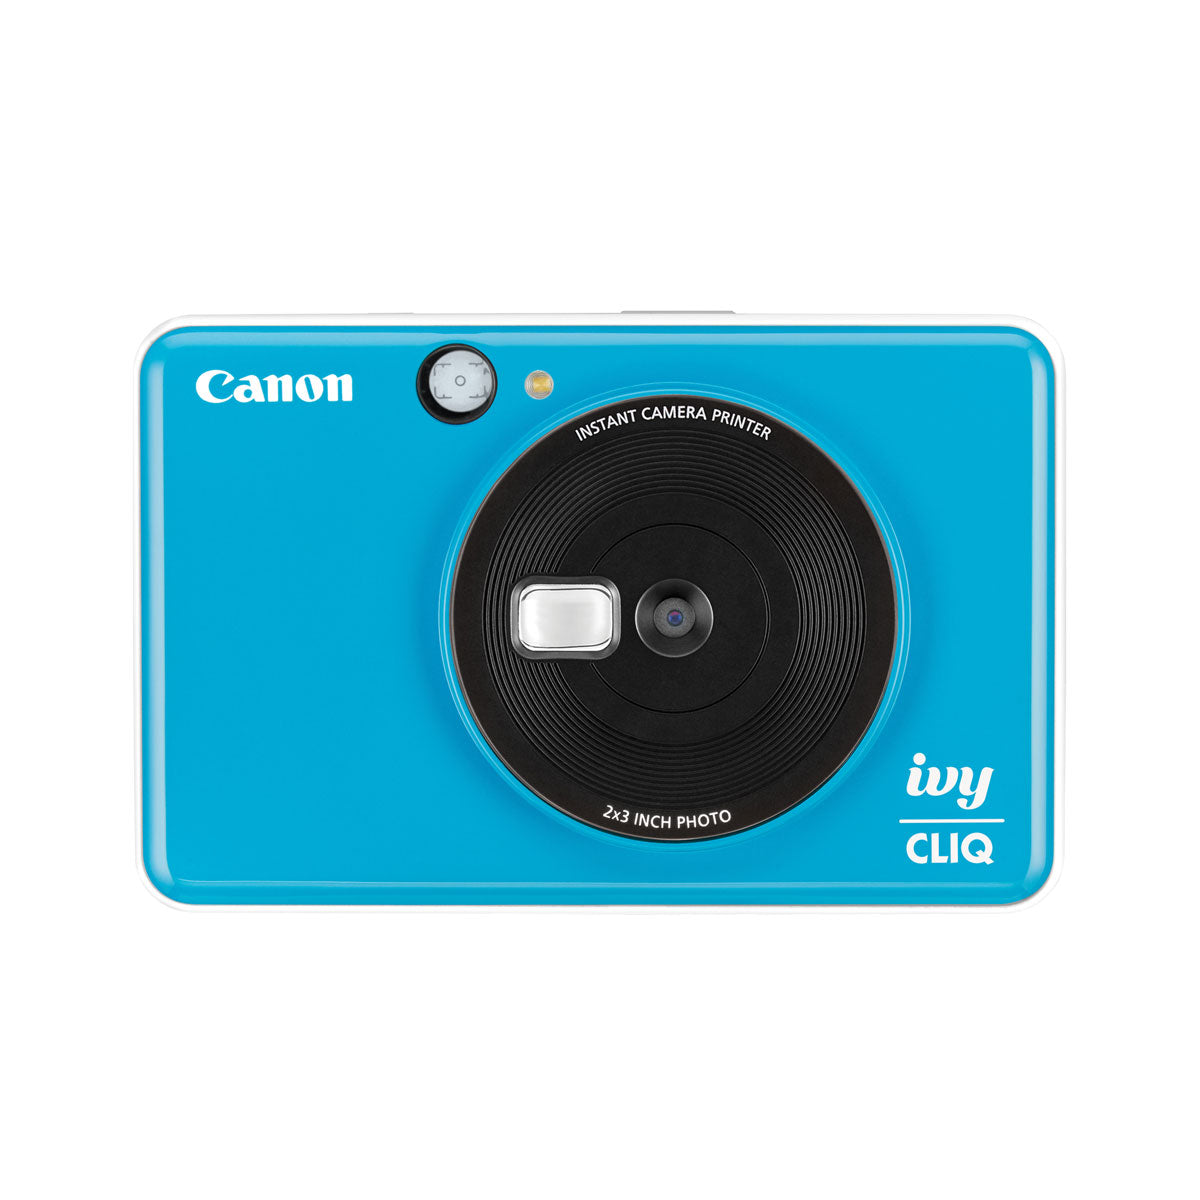 Canon IVY Cliq Instant Camera Printer (Seaside Blue)